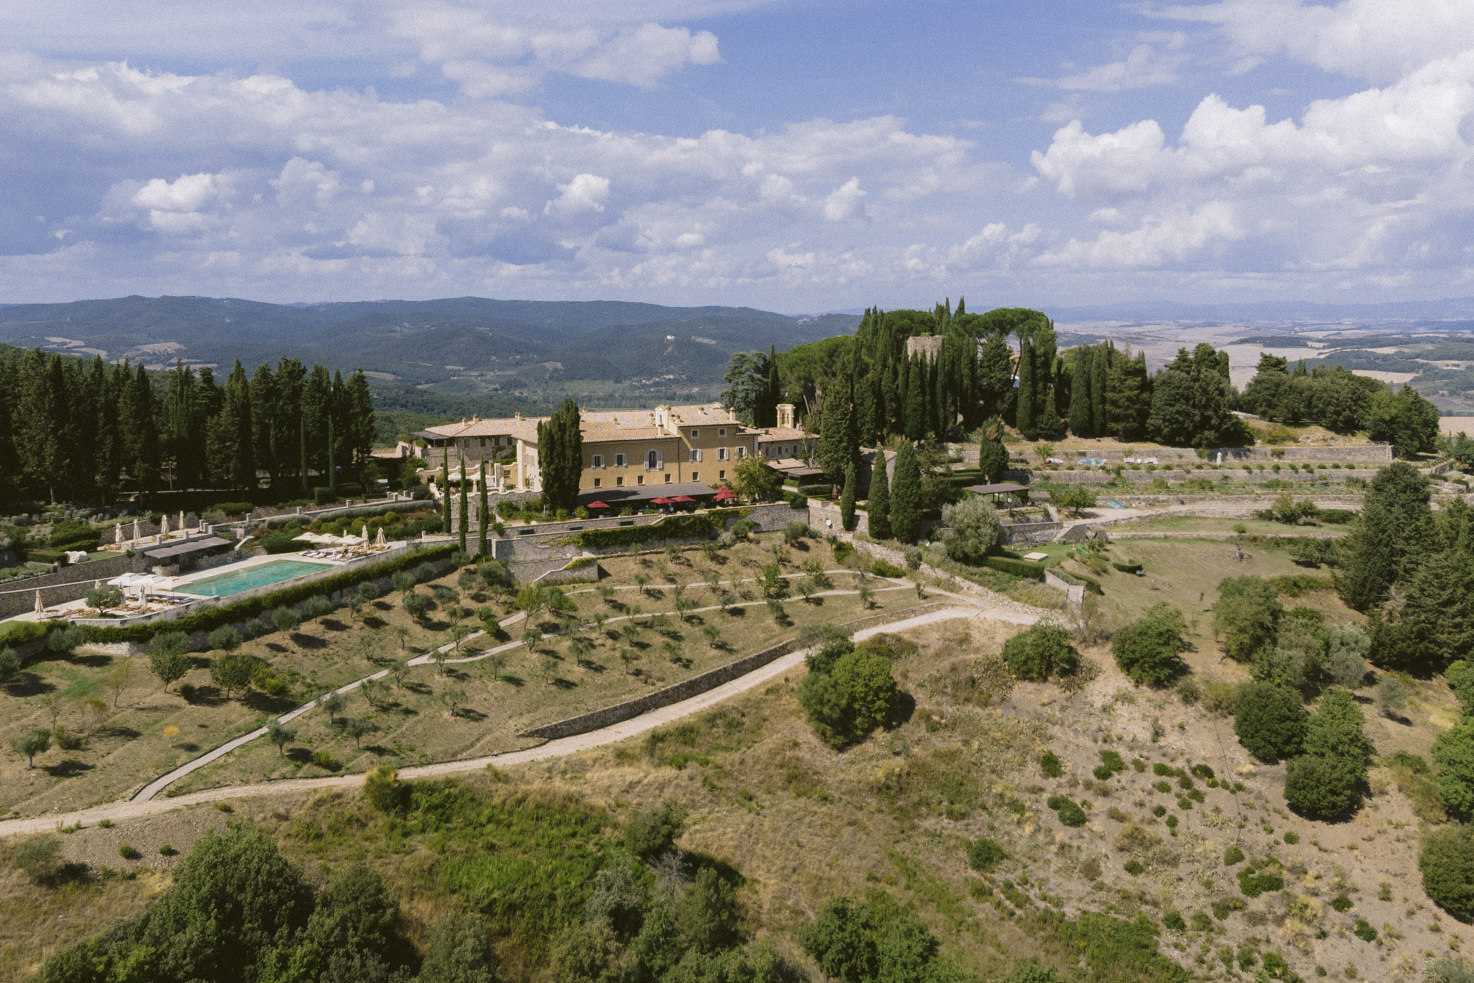 Aerial view of Castiglion del Bosco